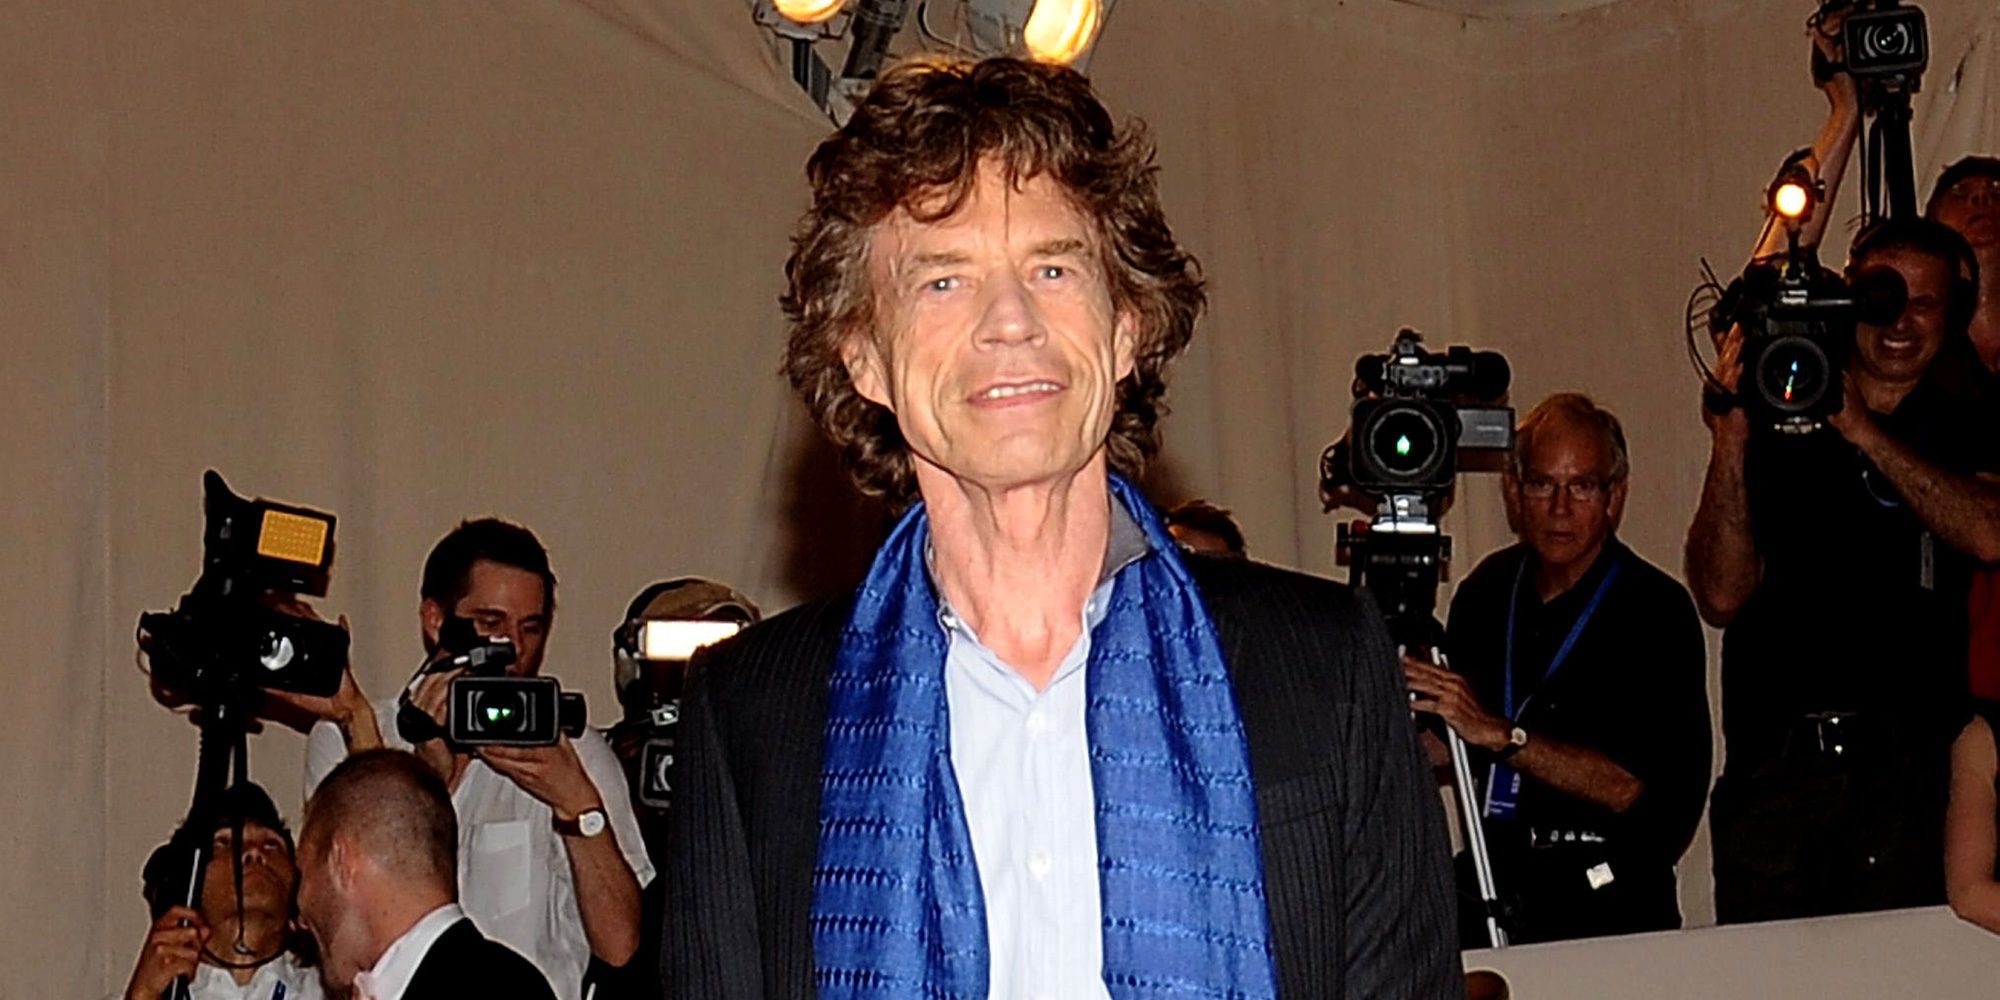 Los problemas de salud de Mick Jagger obligan a cancelar un concierto de los Rolling Stones en Las Vegas